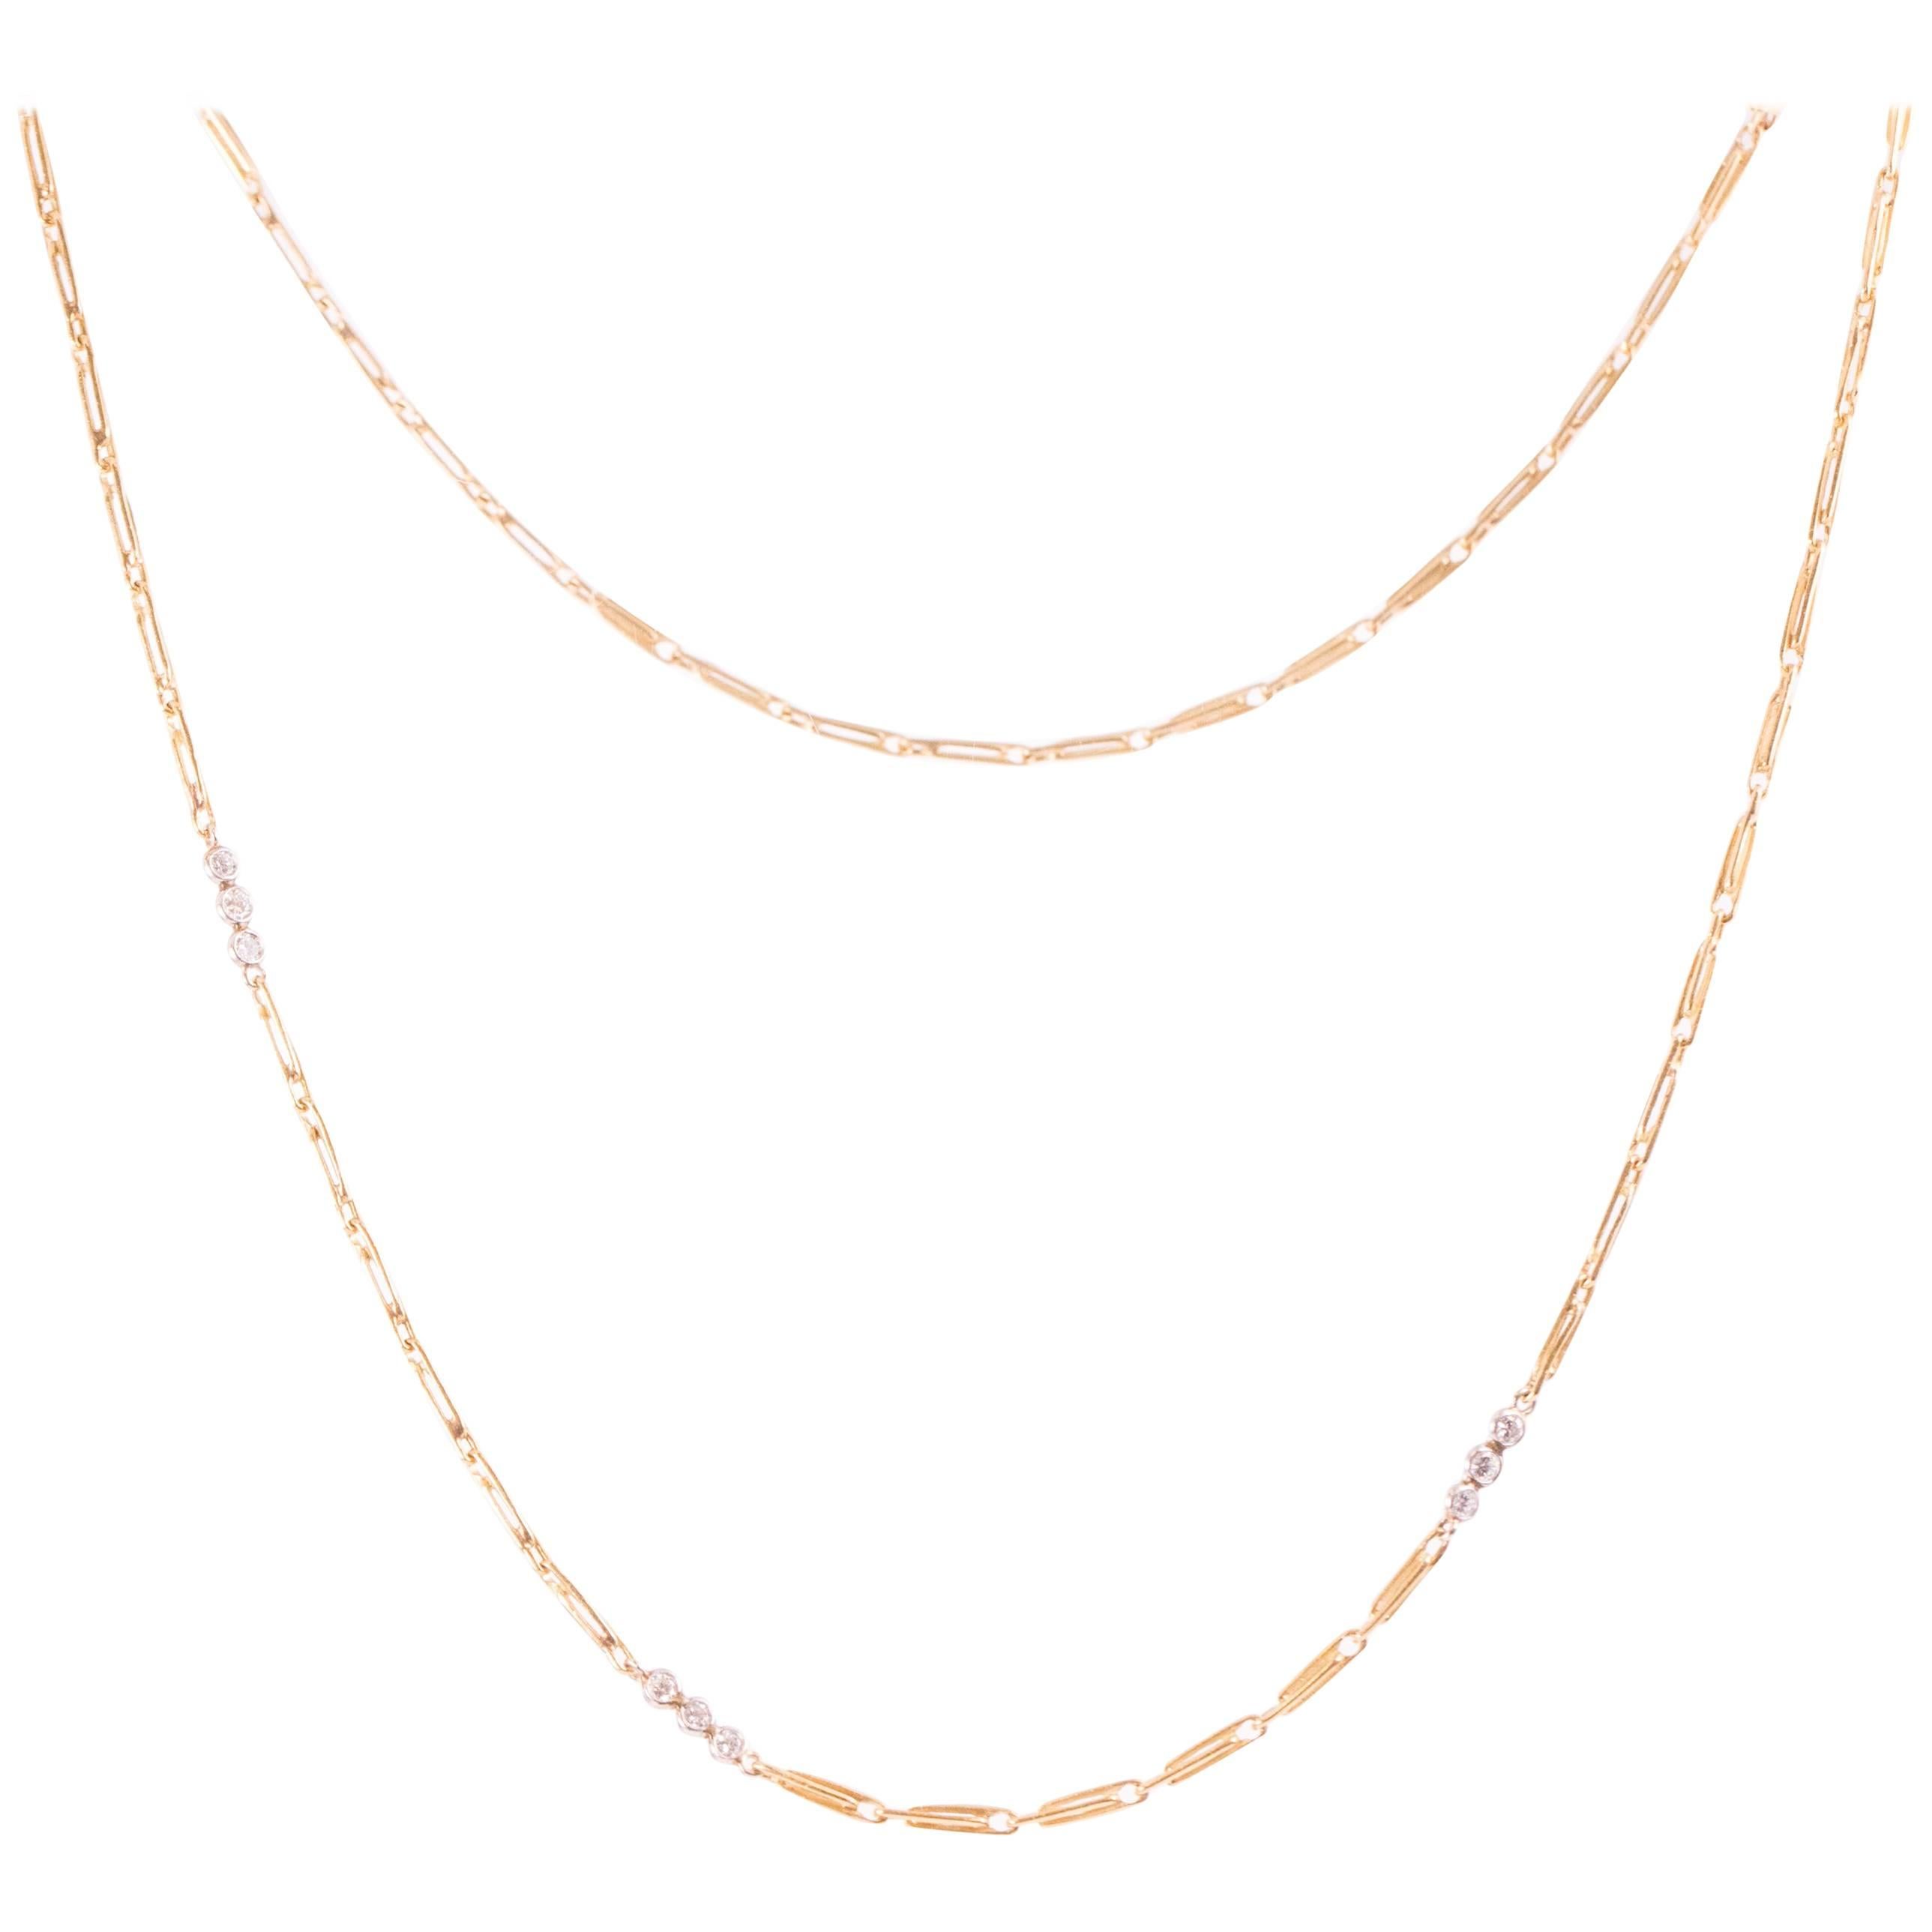 1930s 1.00 Carat Diamond and 18 Karat Yellow Gold Handmade Link Necklace